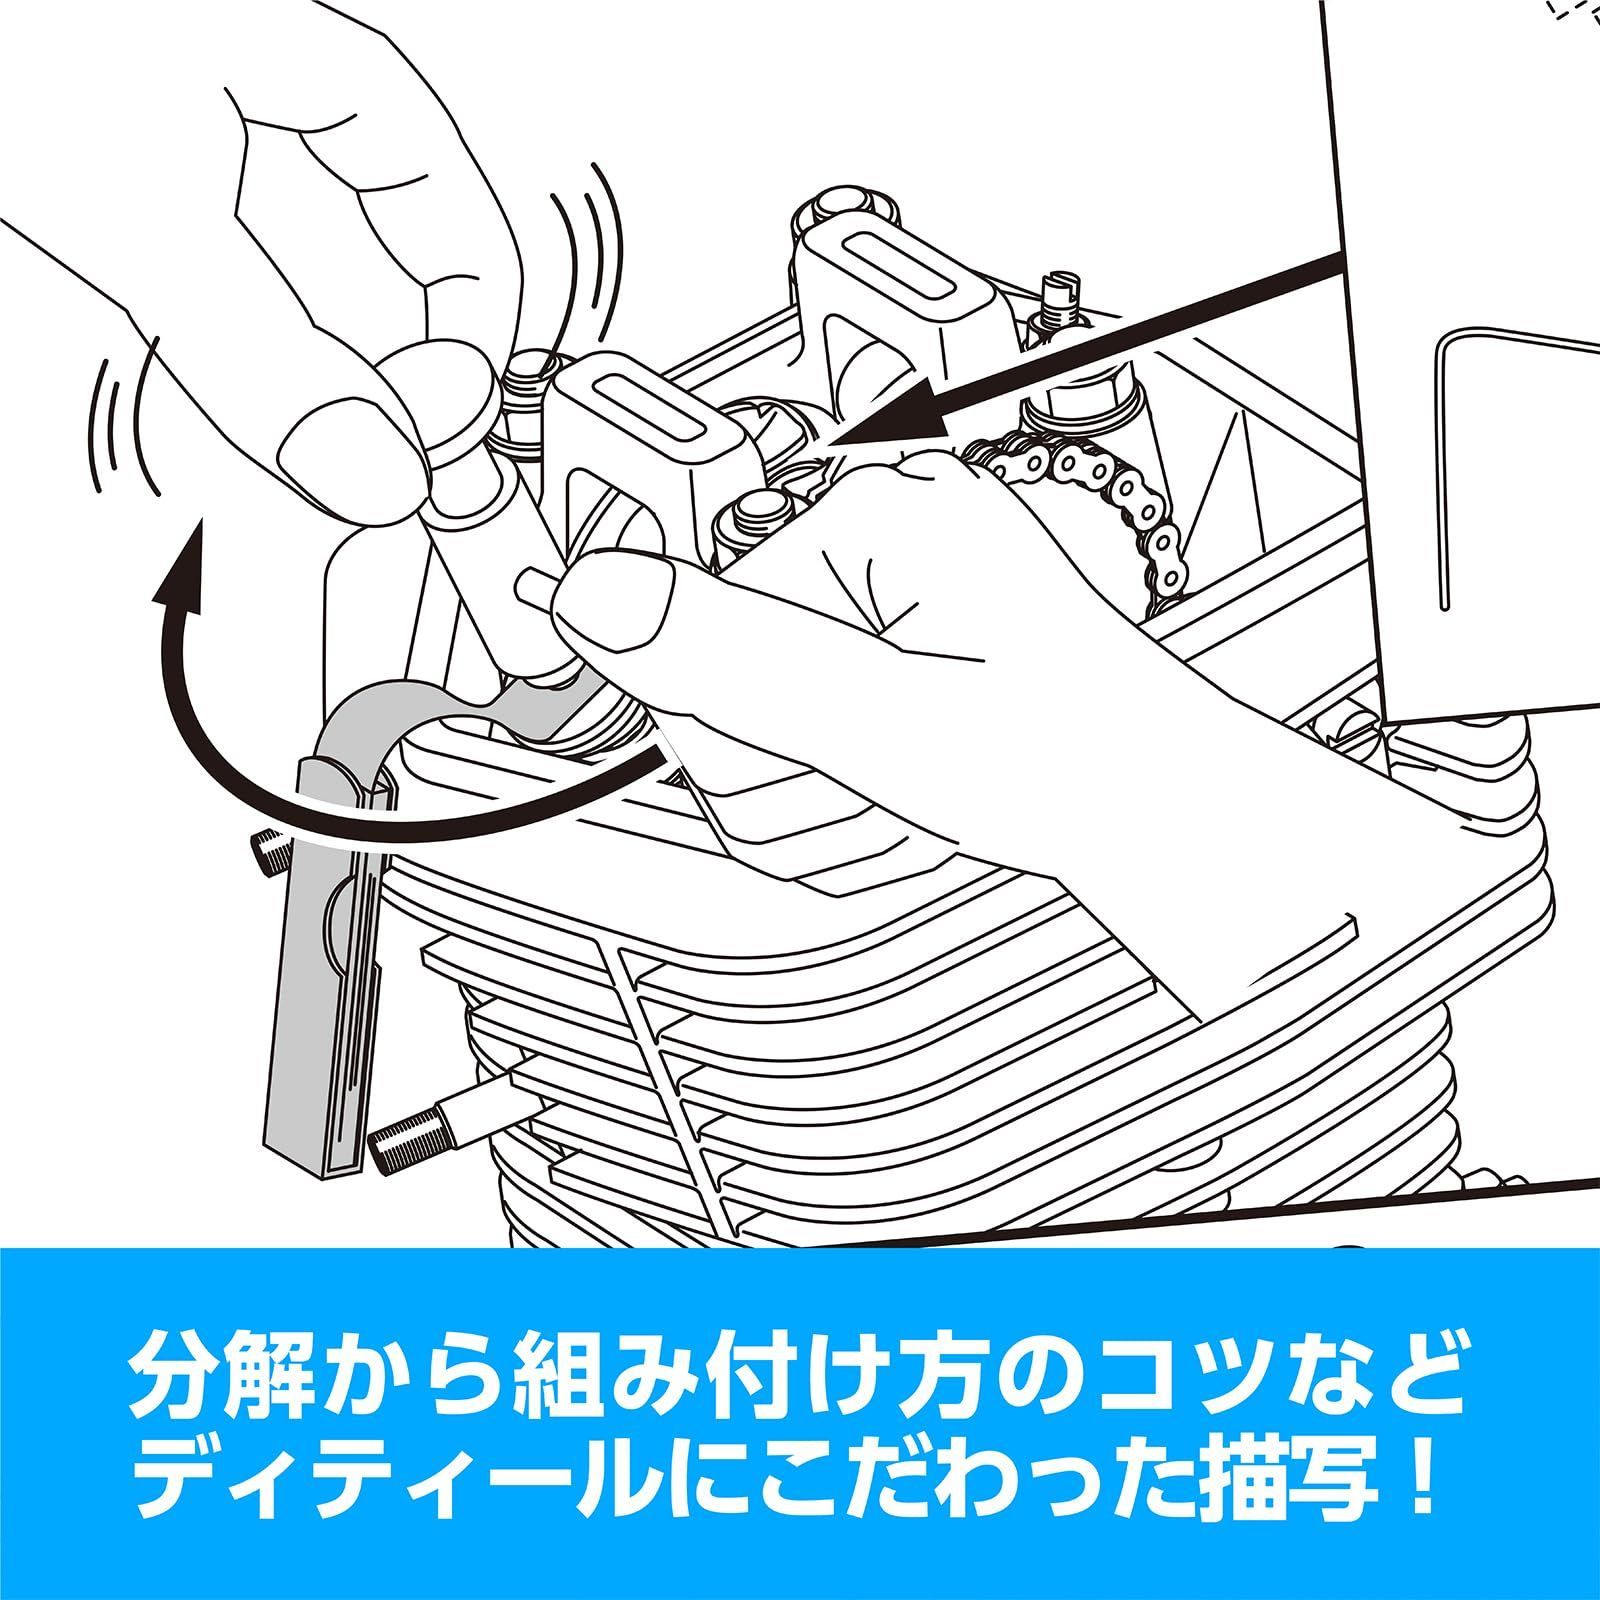 【新着商品】キタコ(KITACO) ボアアップキットの組み付け方 虎の巻 腰上編 エイプ系縦型エンジン 00-0901001